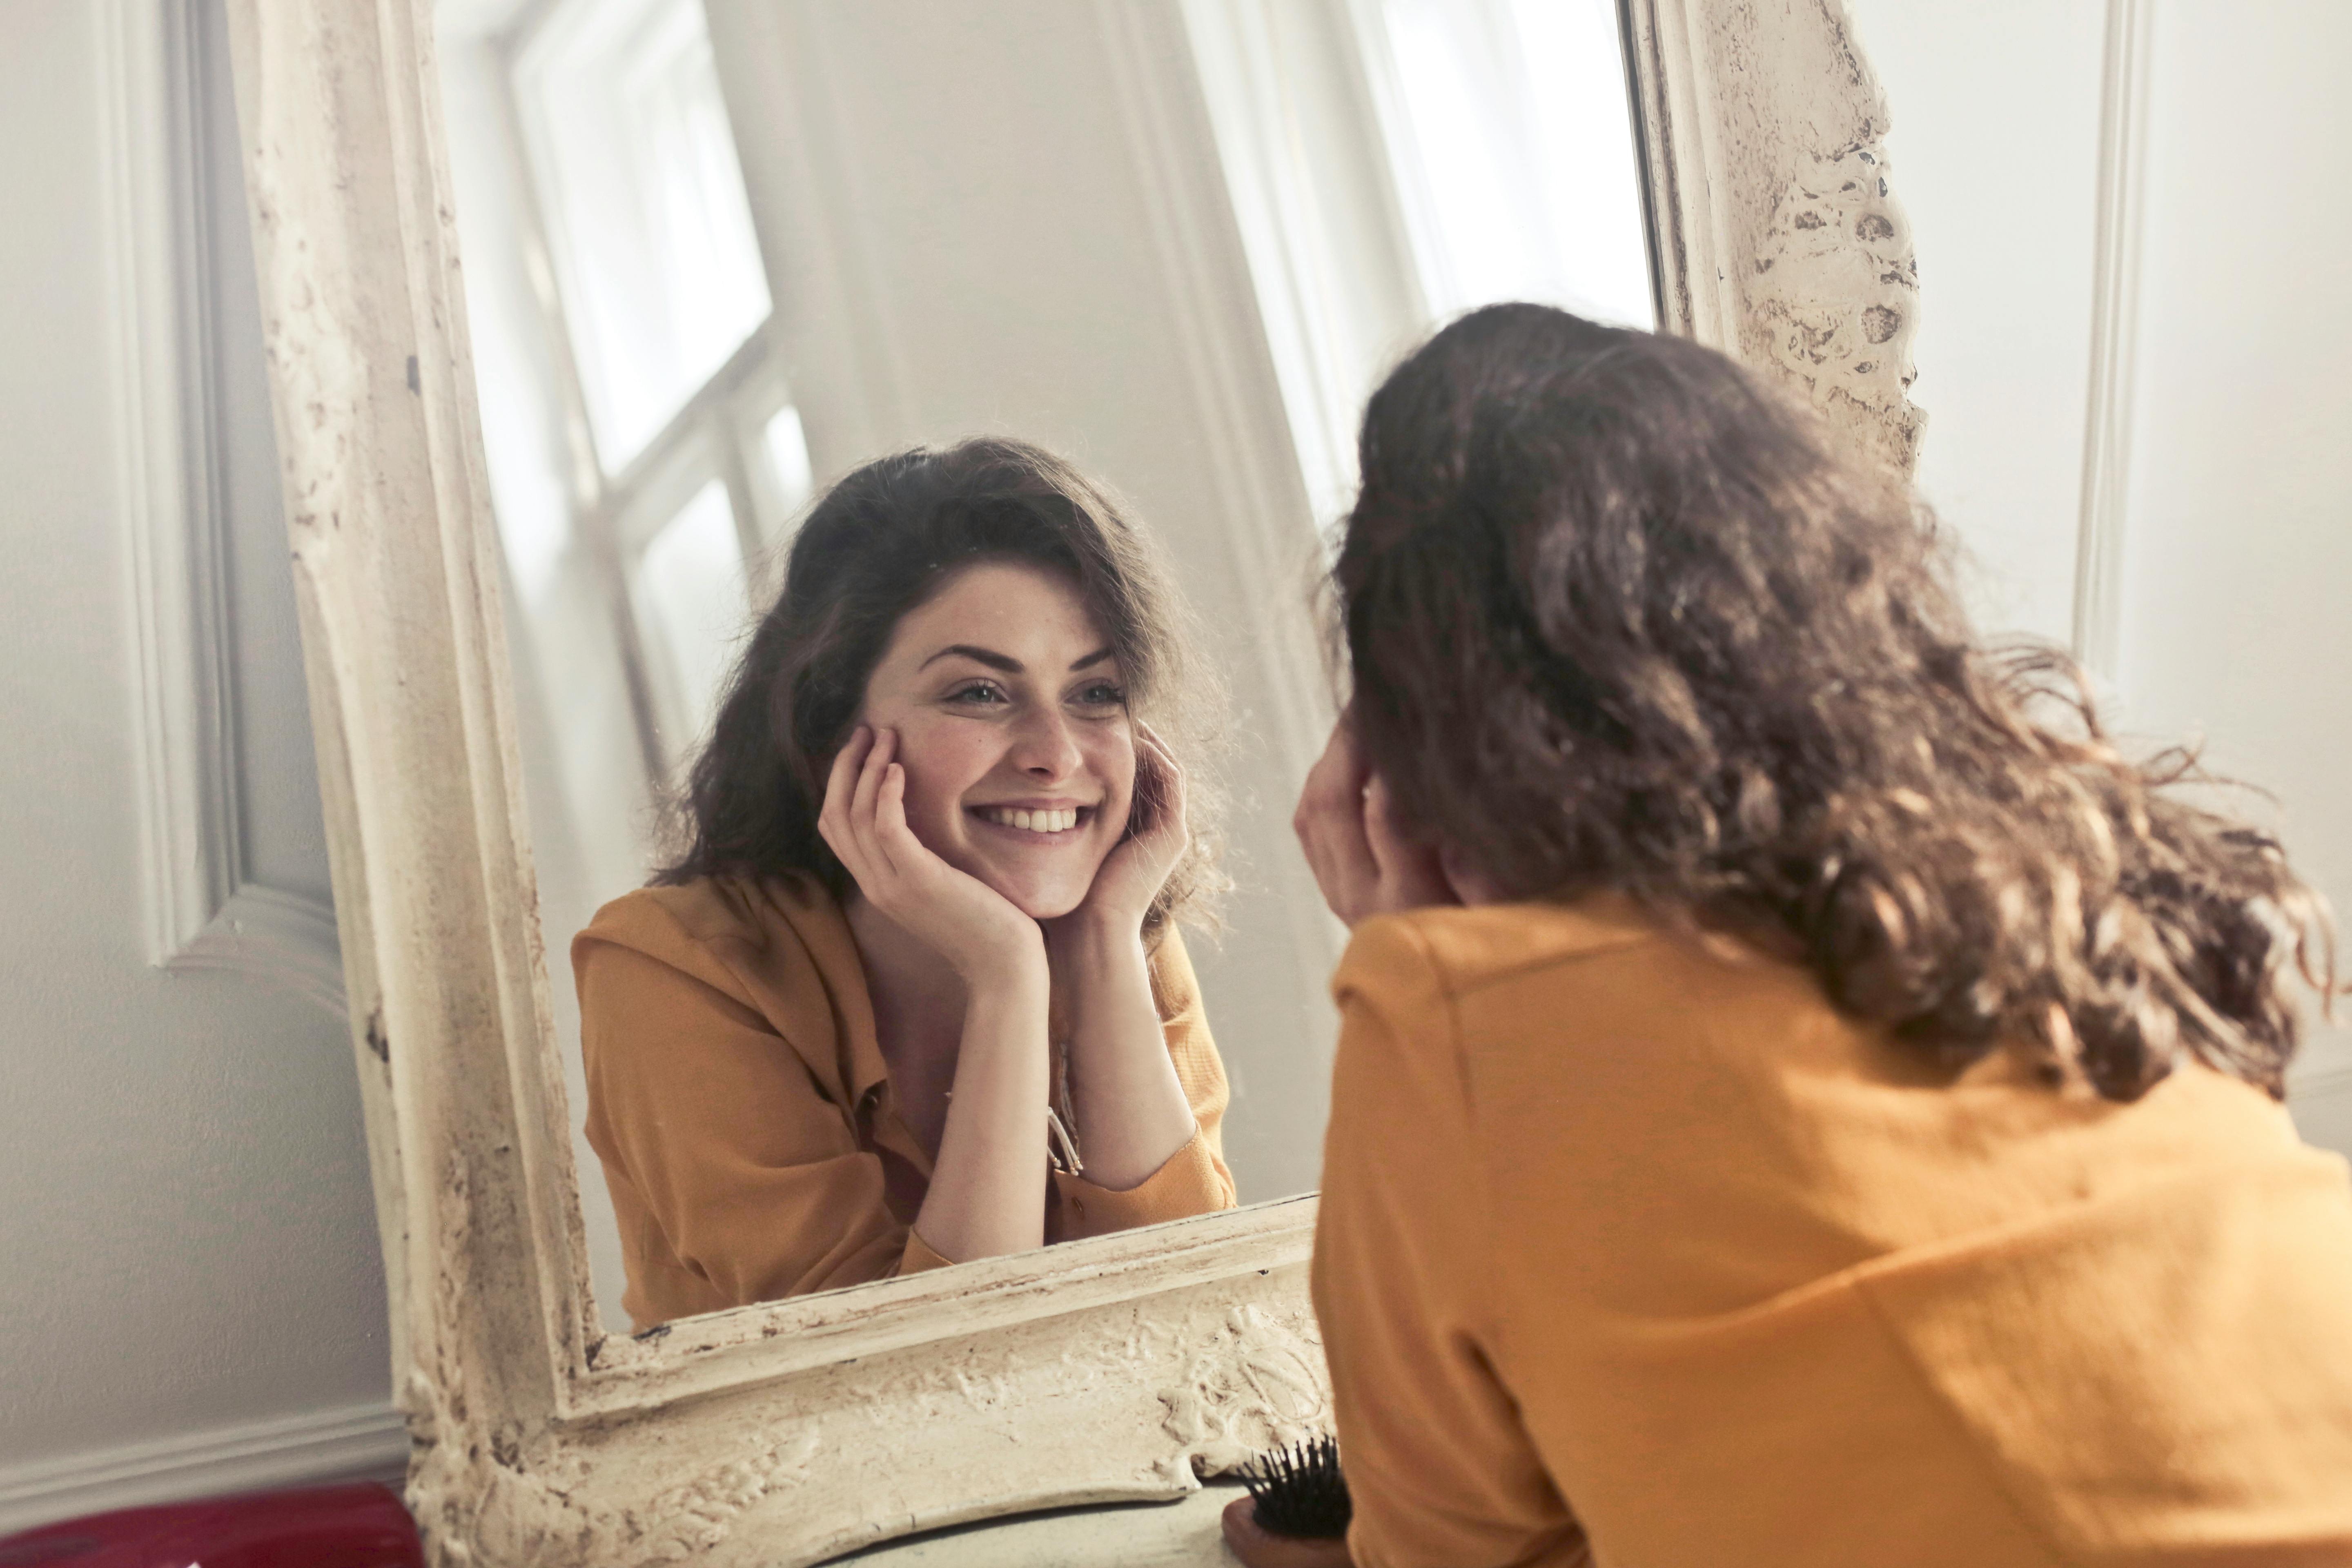 Une femme heureuse qui sourit à son reflet dans un miroir | Source : Pexels